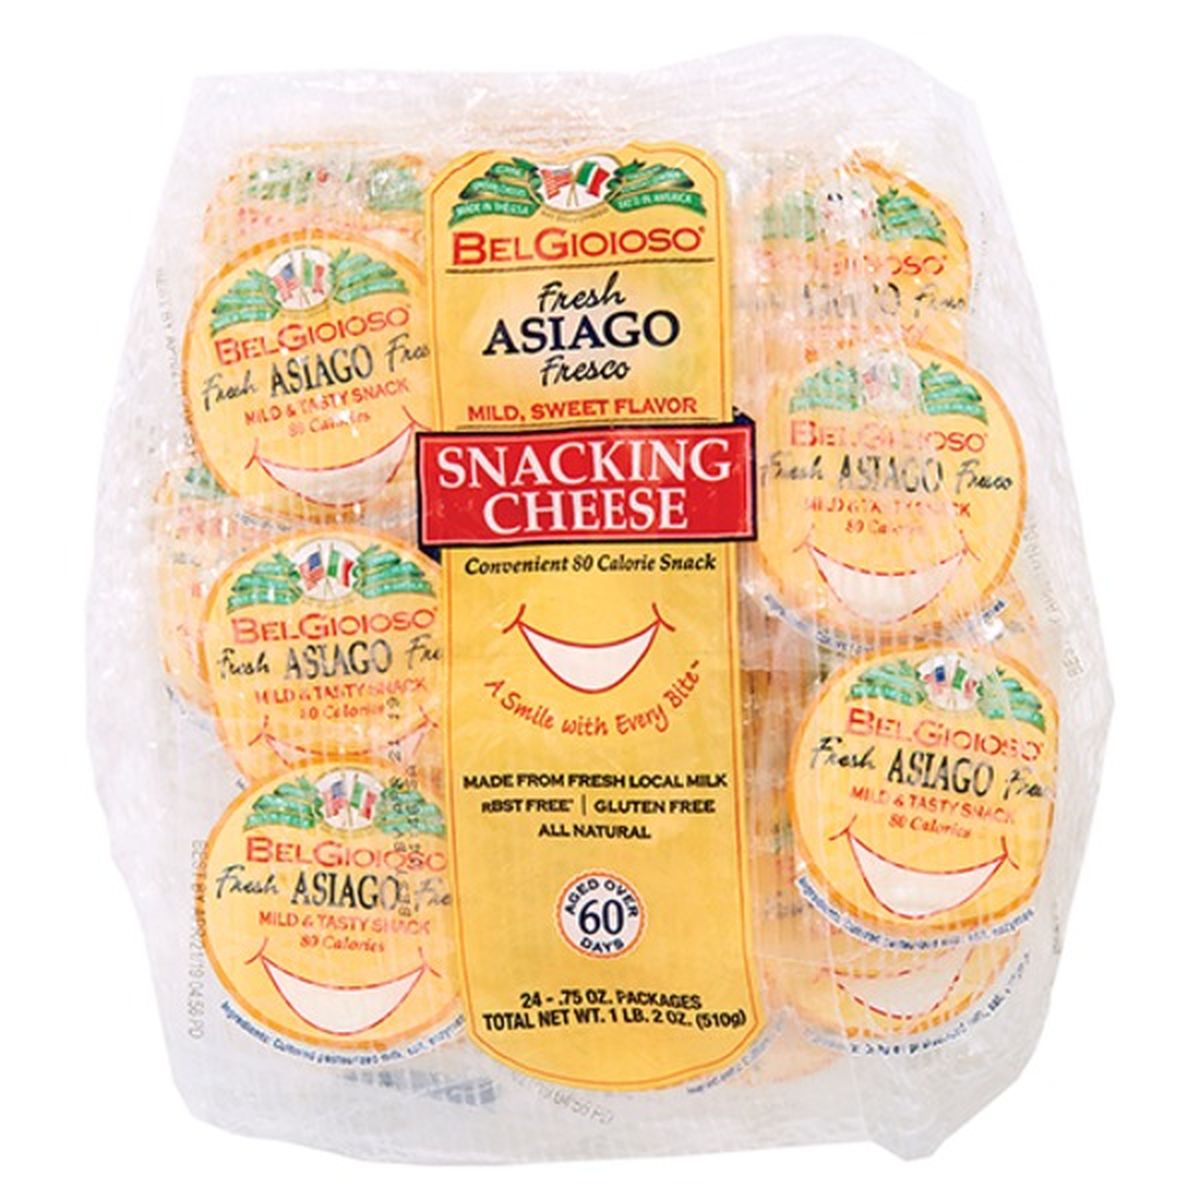 Calories in BelGioioso Fresh Asiago Snacking Cheese